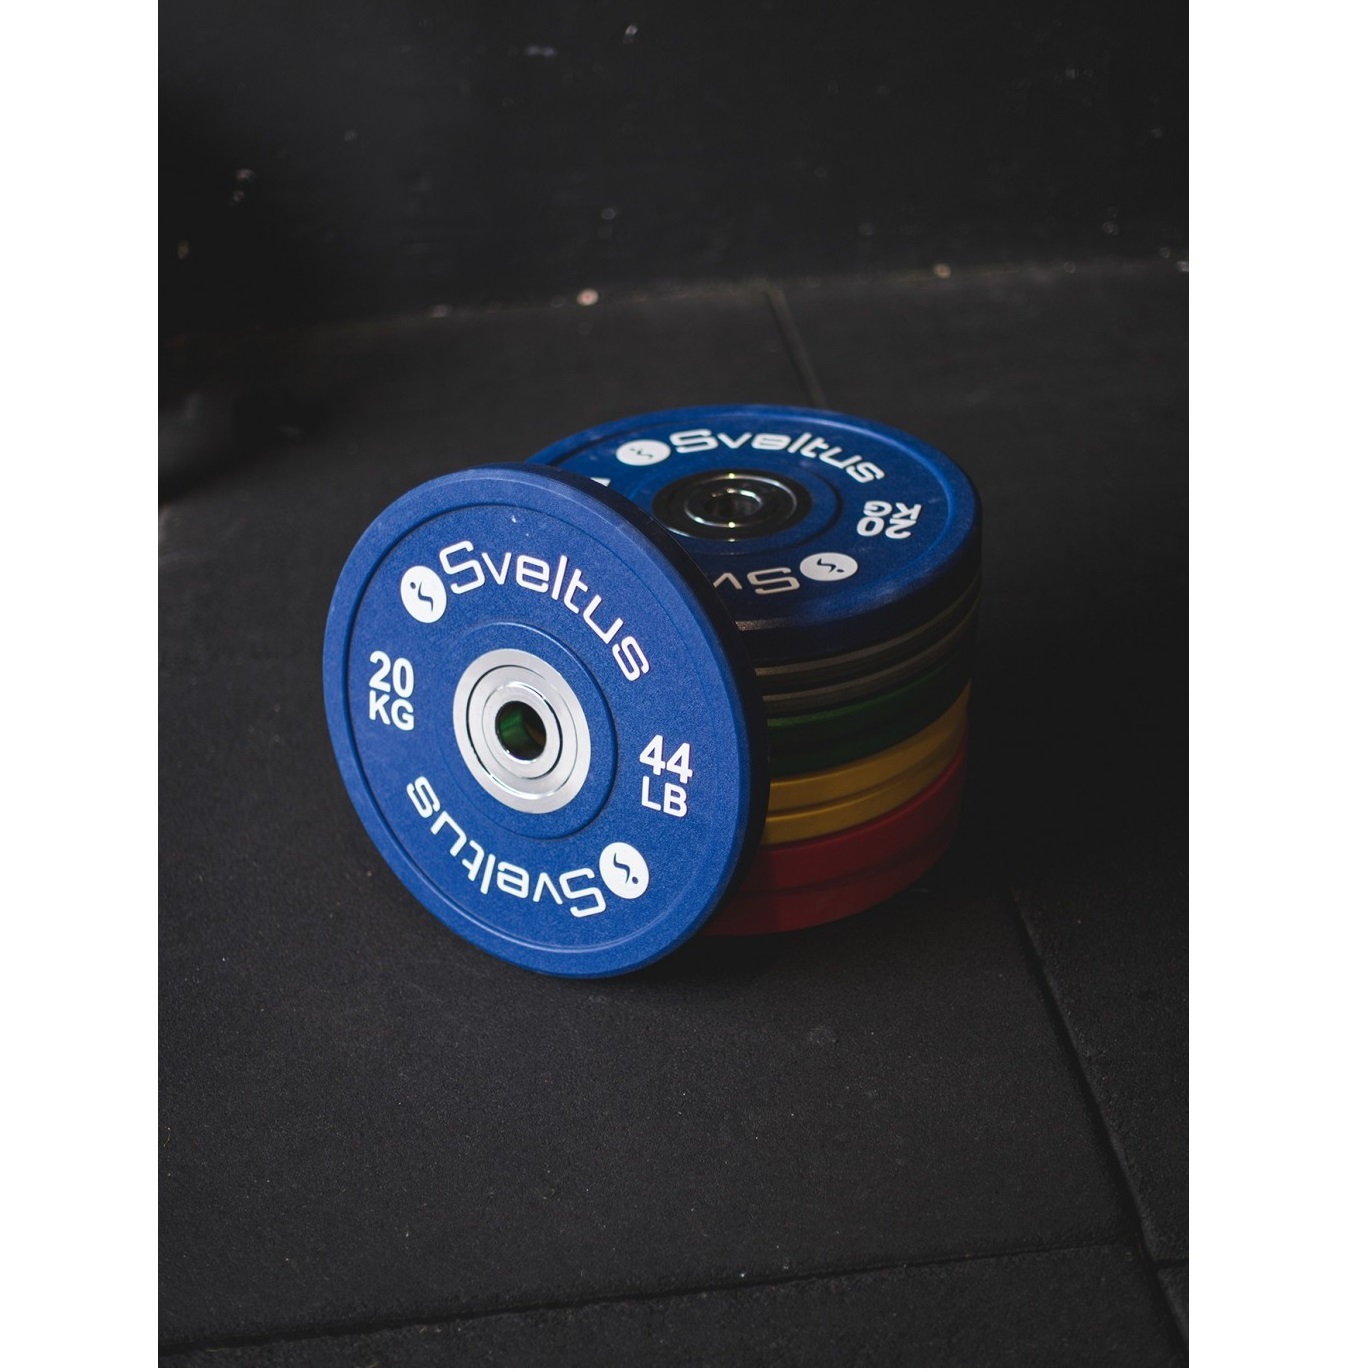 Disque Olympique - Diamètre 51mm Disque olympique compétition - 20 kg Sveltus - FitnessBoutique